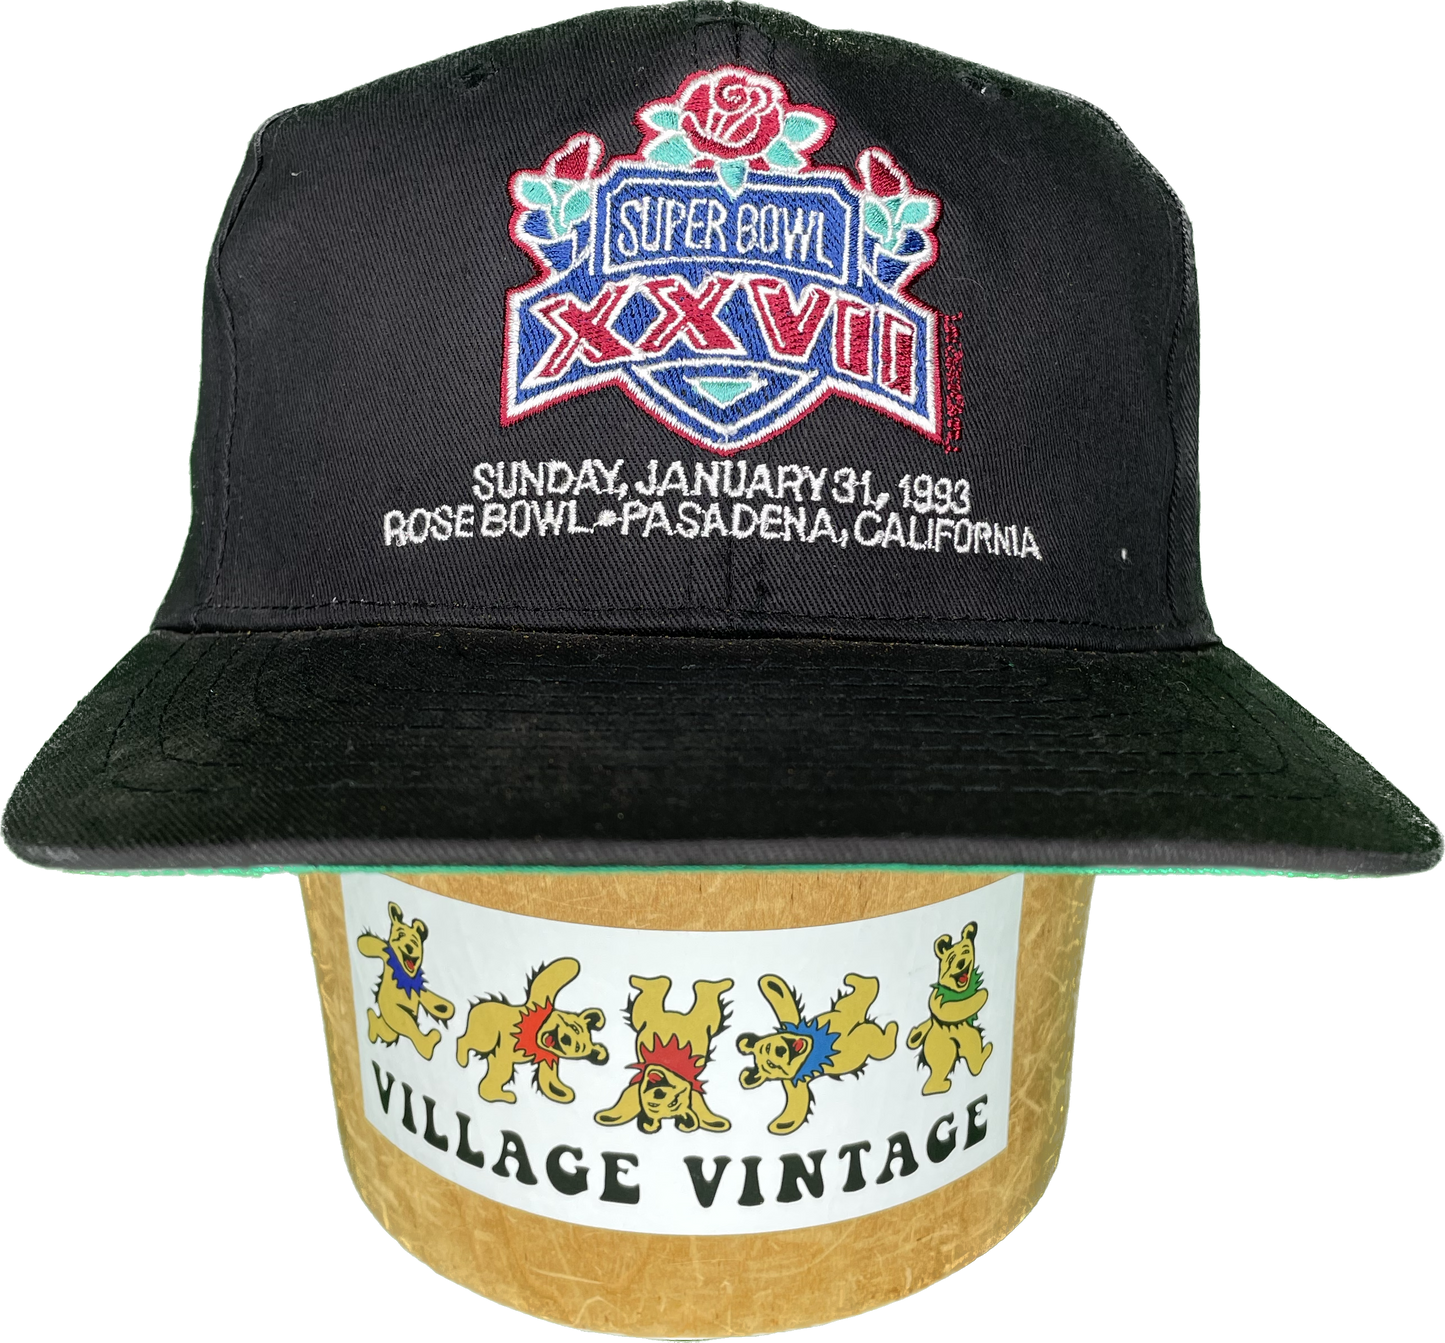 Vintage 1993 NFL Superbowl Rosebowl Pasadena SnapBack Hat